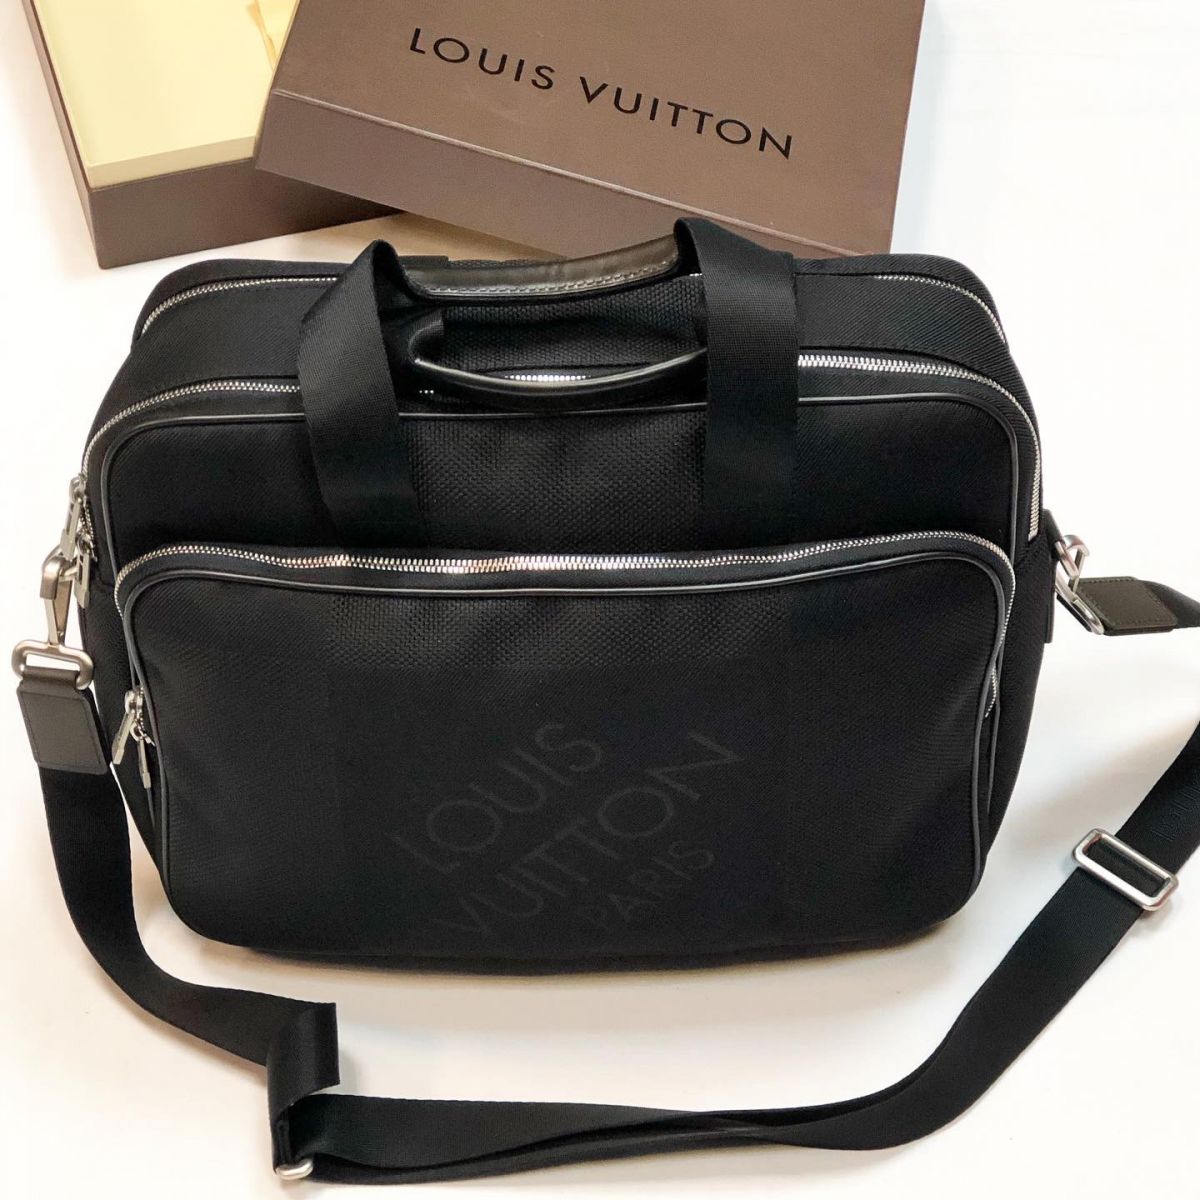 #MechtamenСумка Louis Vuitton размер 35/30 цена 61 540 руб